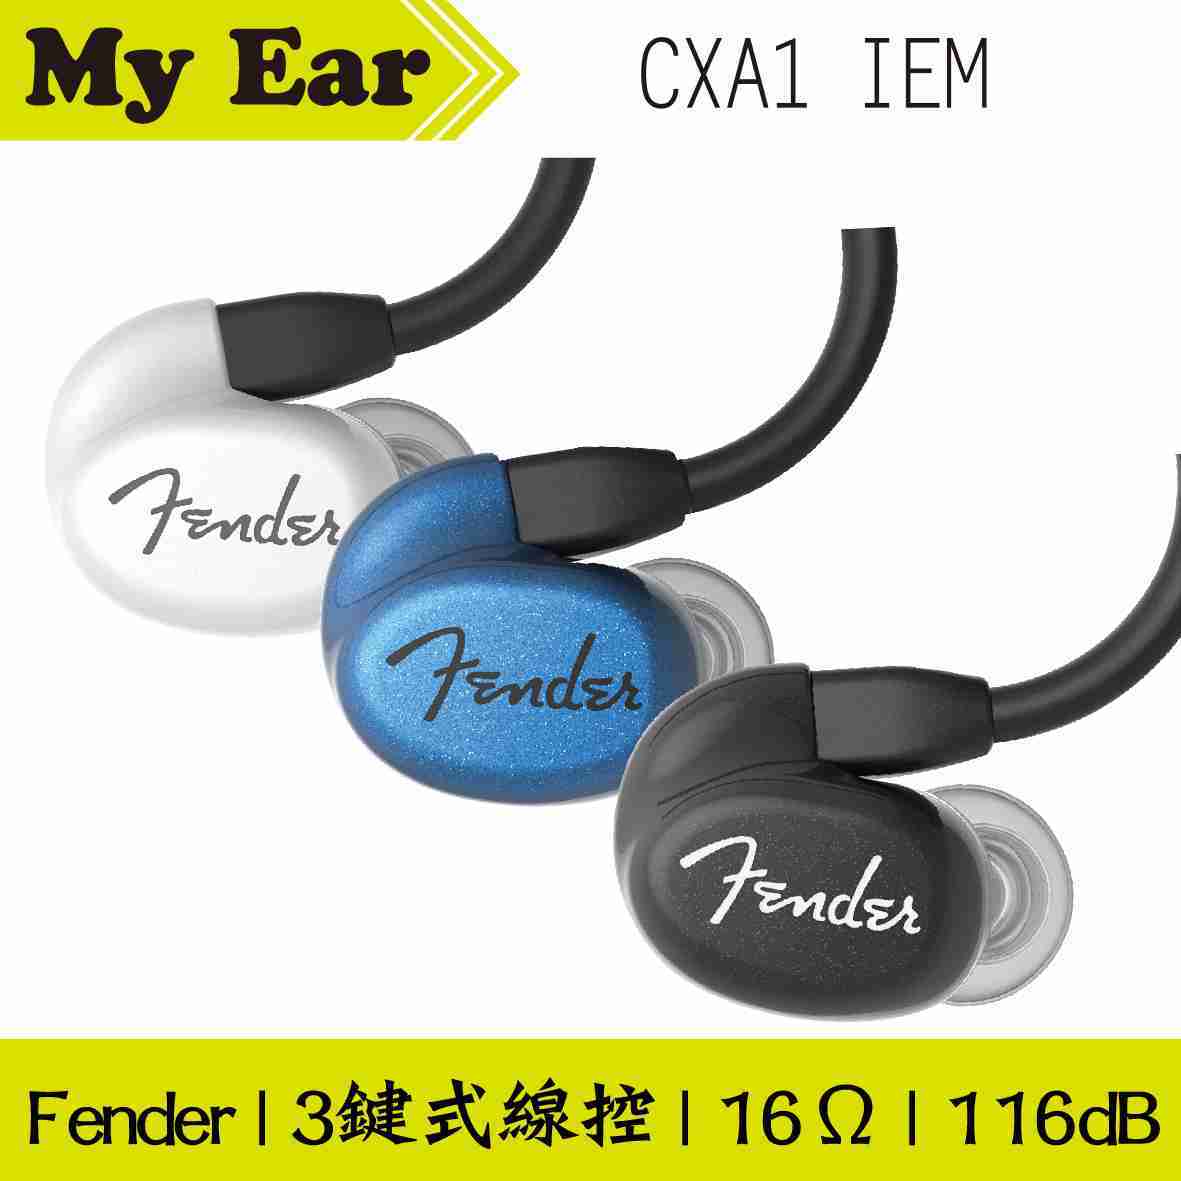 Fender CXA1 IEM 黑色 可通話 線控式 耳道式耳機 | My Ear 耳機專門店